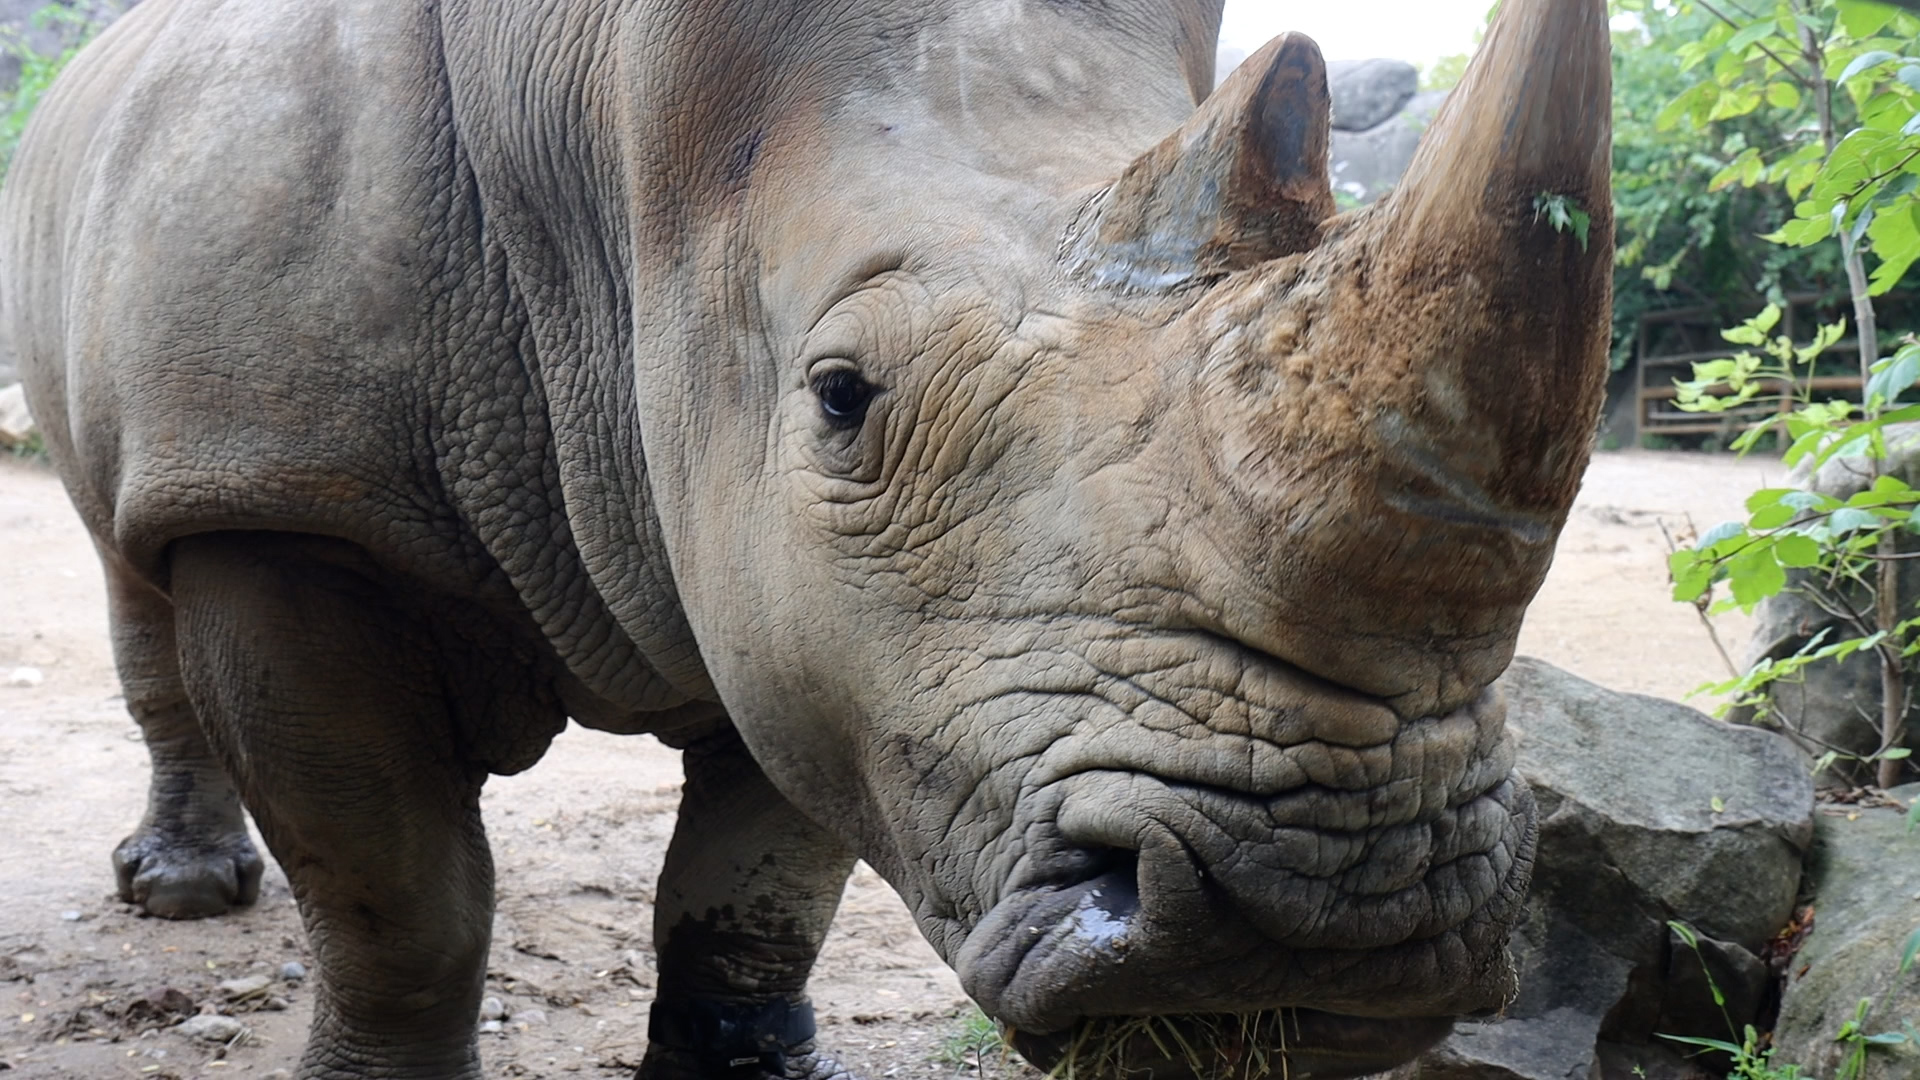 Saving Rhinos with Science